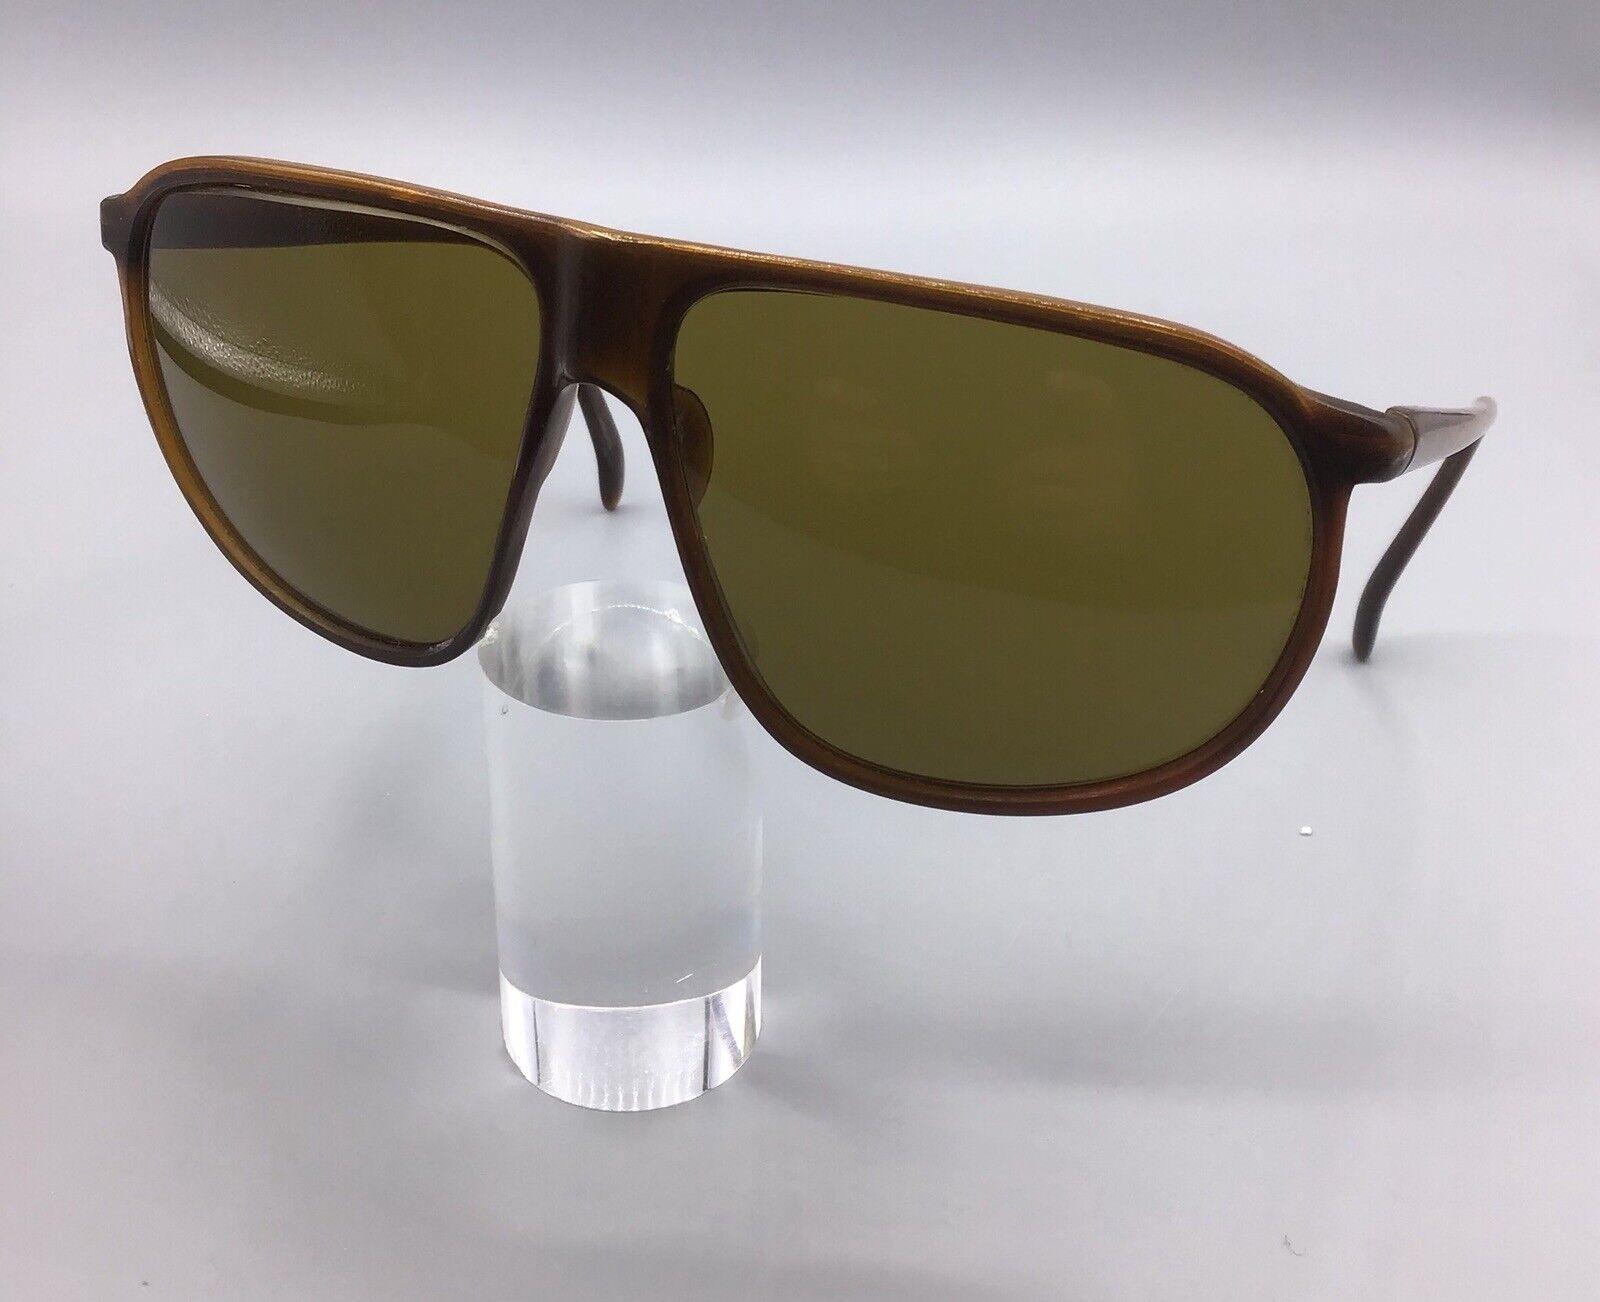 Sunglasses vintage used Lozza occhiale da sole sonnenbrillen lunettes de soleil